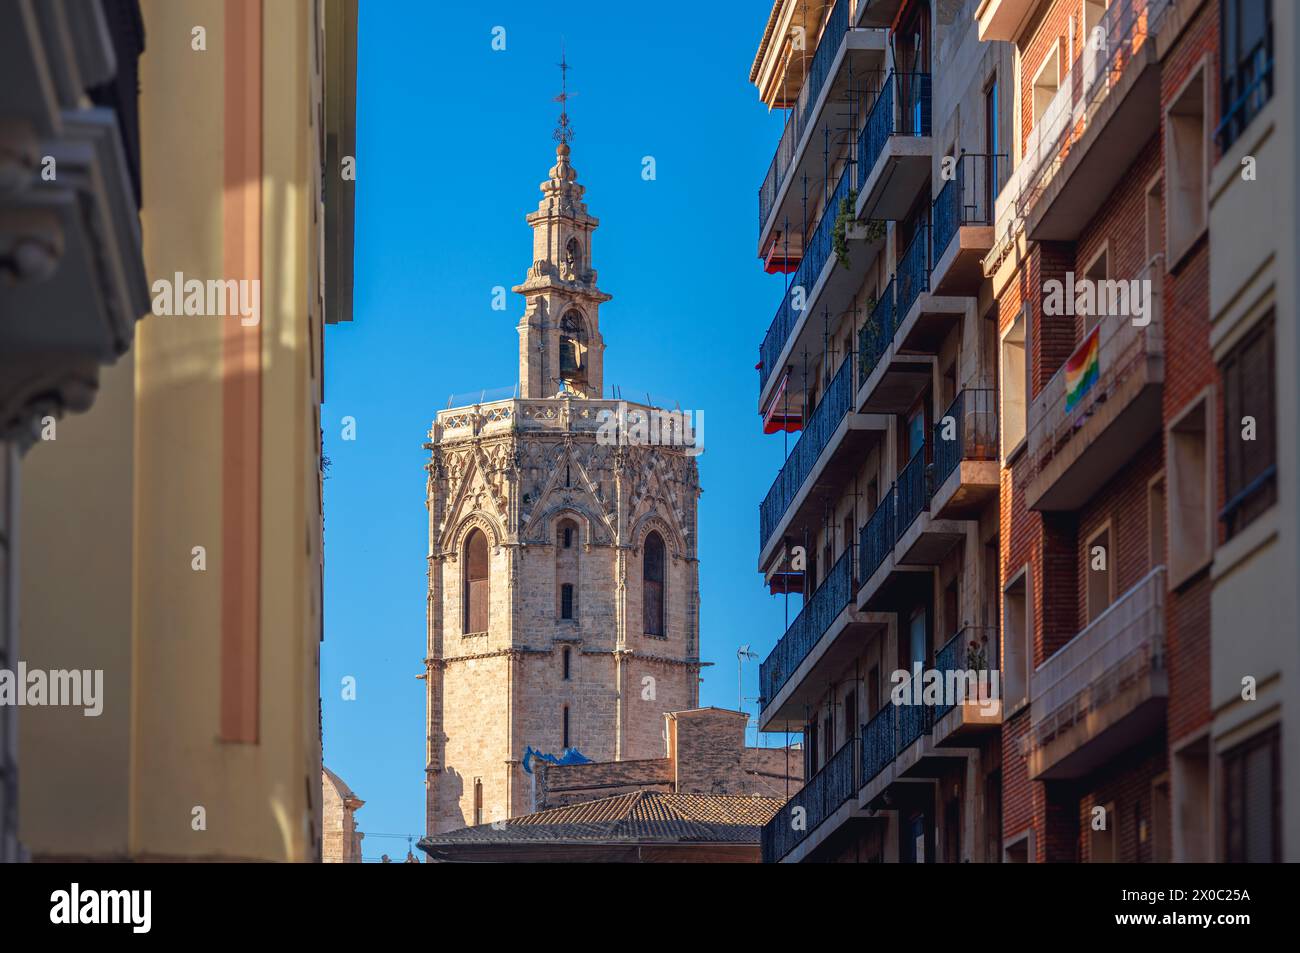 Vue sur le clocher de style gothique de la cathédrale de Valence connue sous le nom de Miguelete ou Micalet Banque D'Images